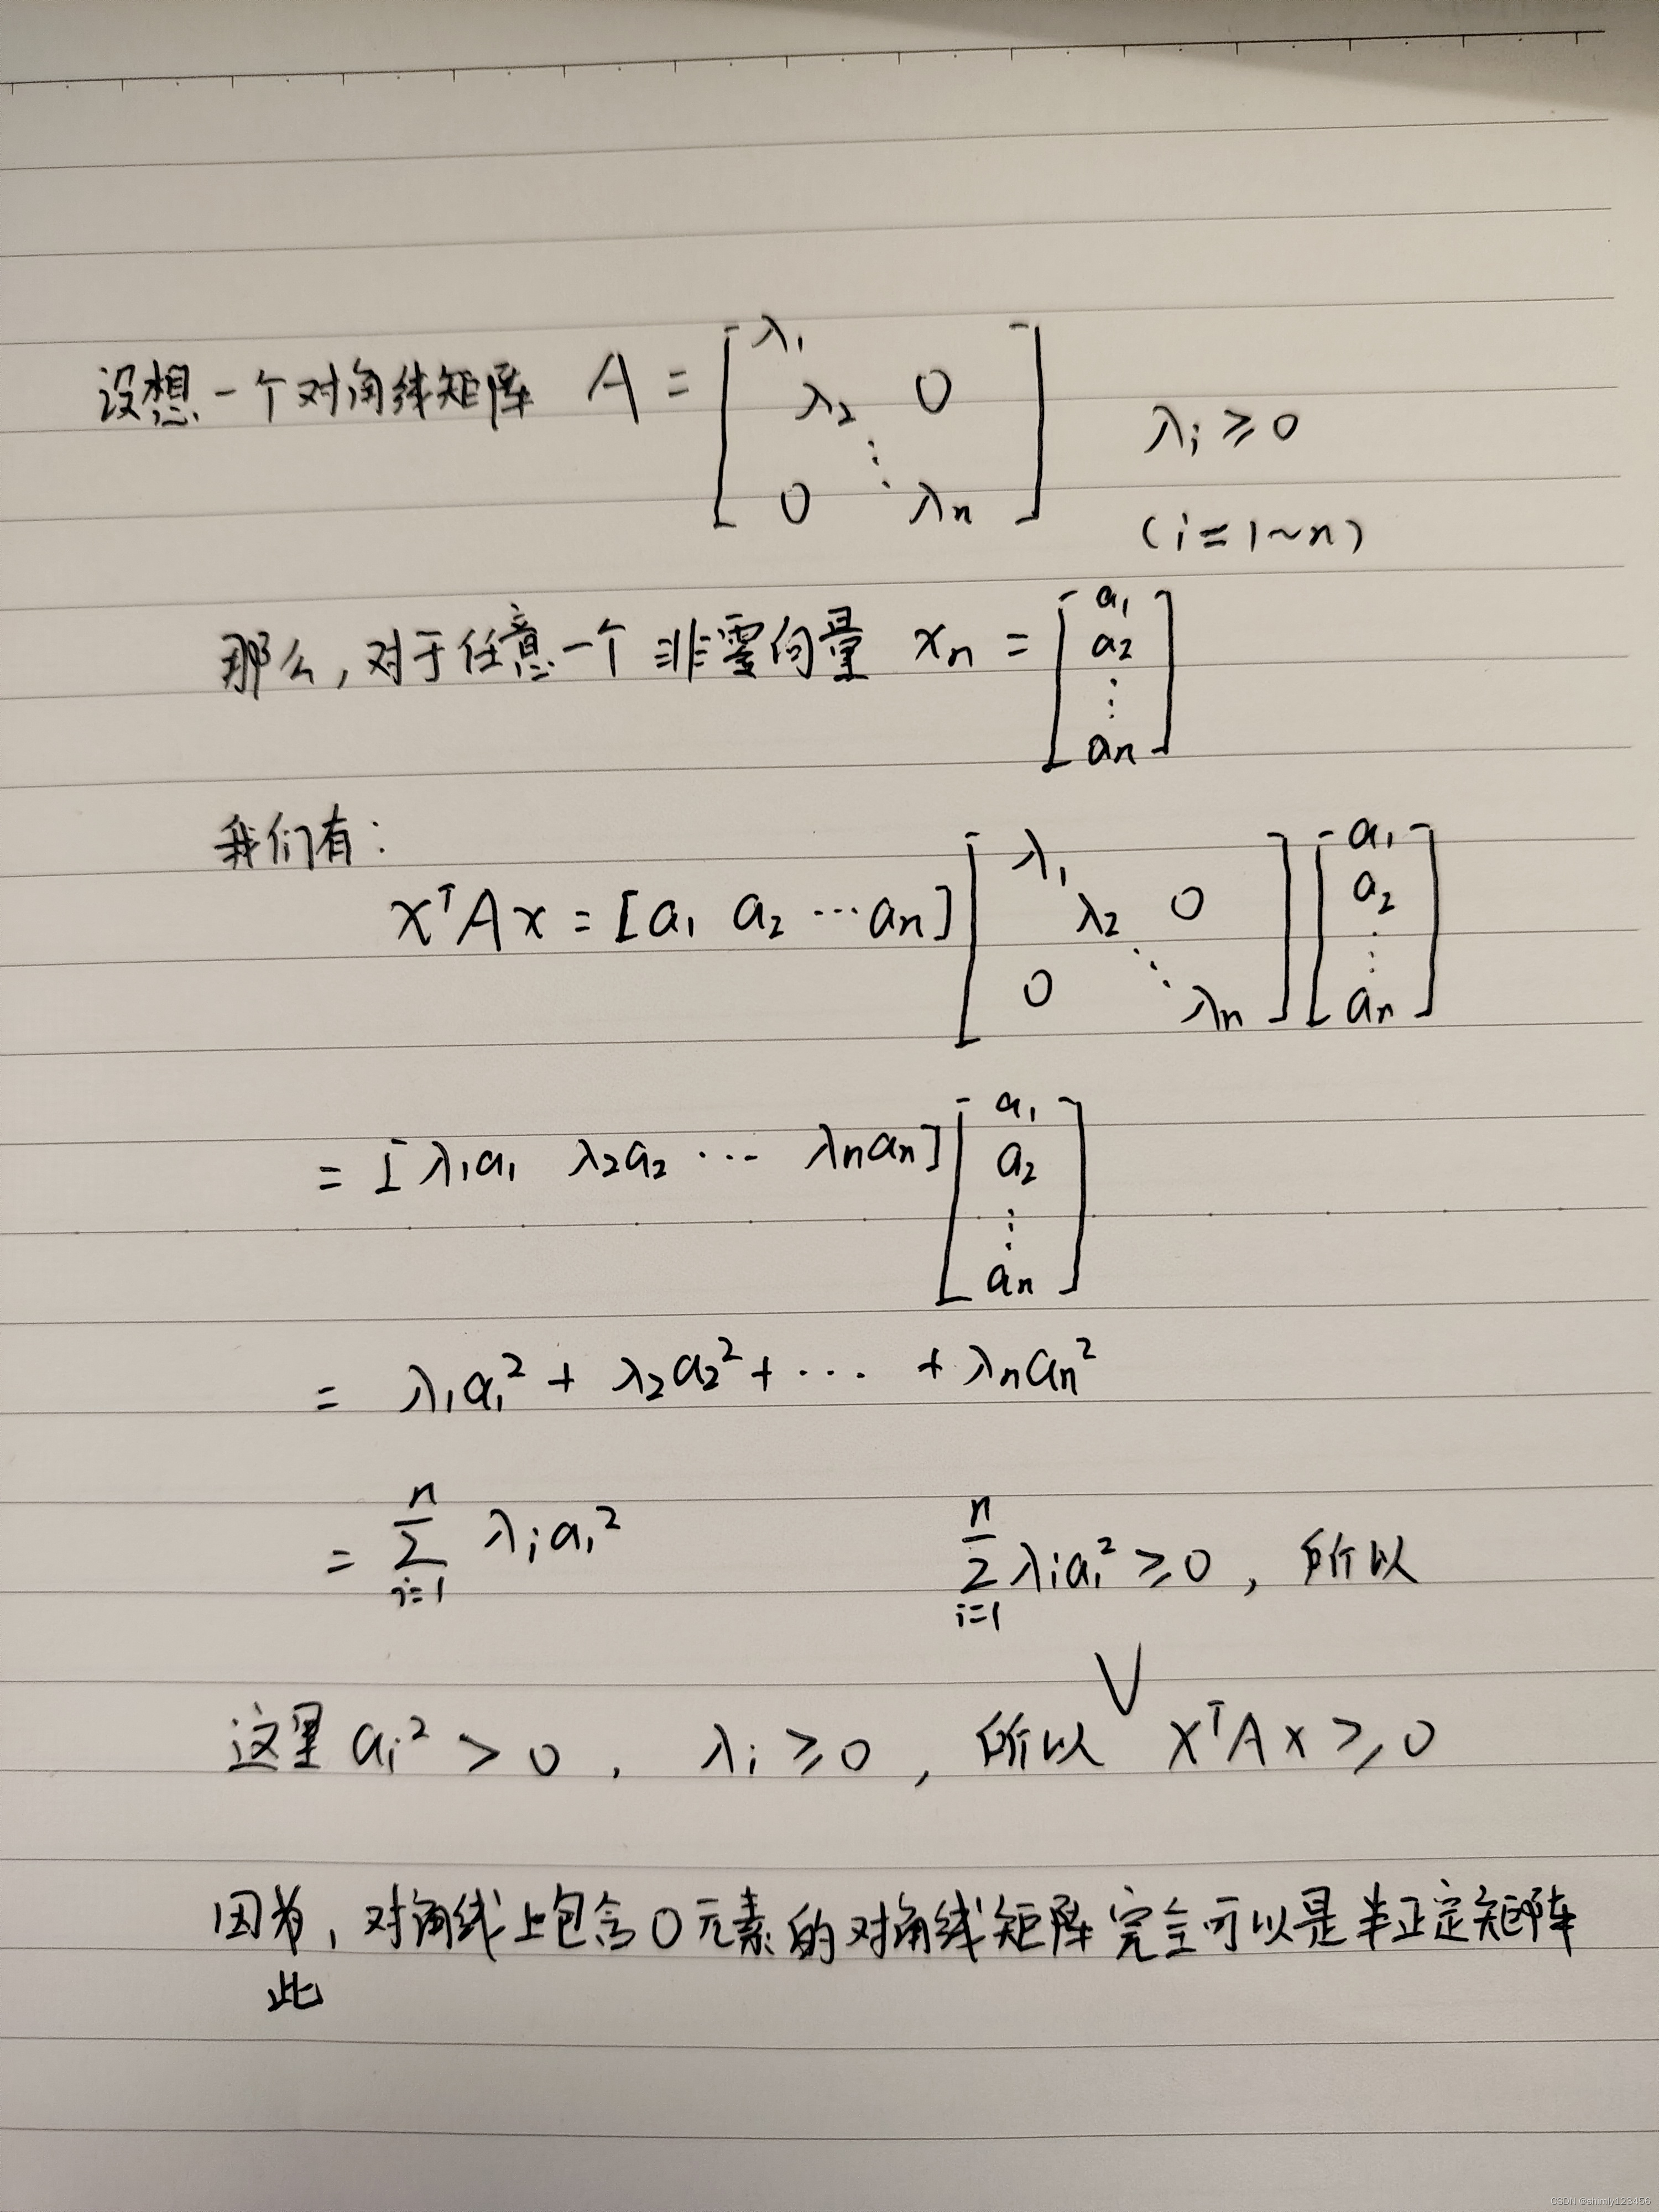 (done) Positive Semidefinite Matrices 什么是半正定矩阵？如何证明一个矩阵是半正定矩阵？ 可以使用特征值